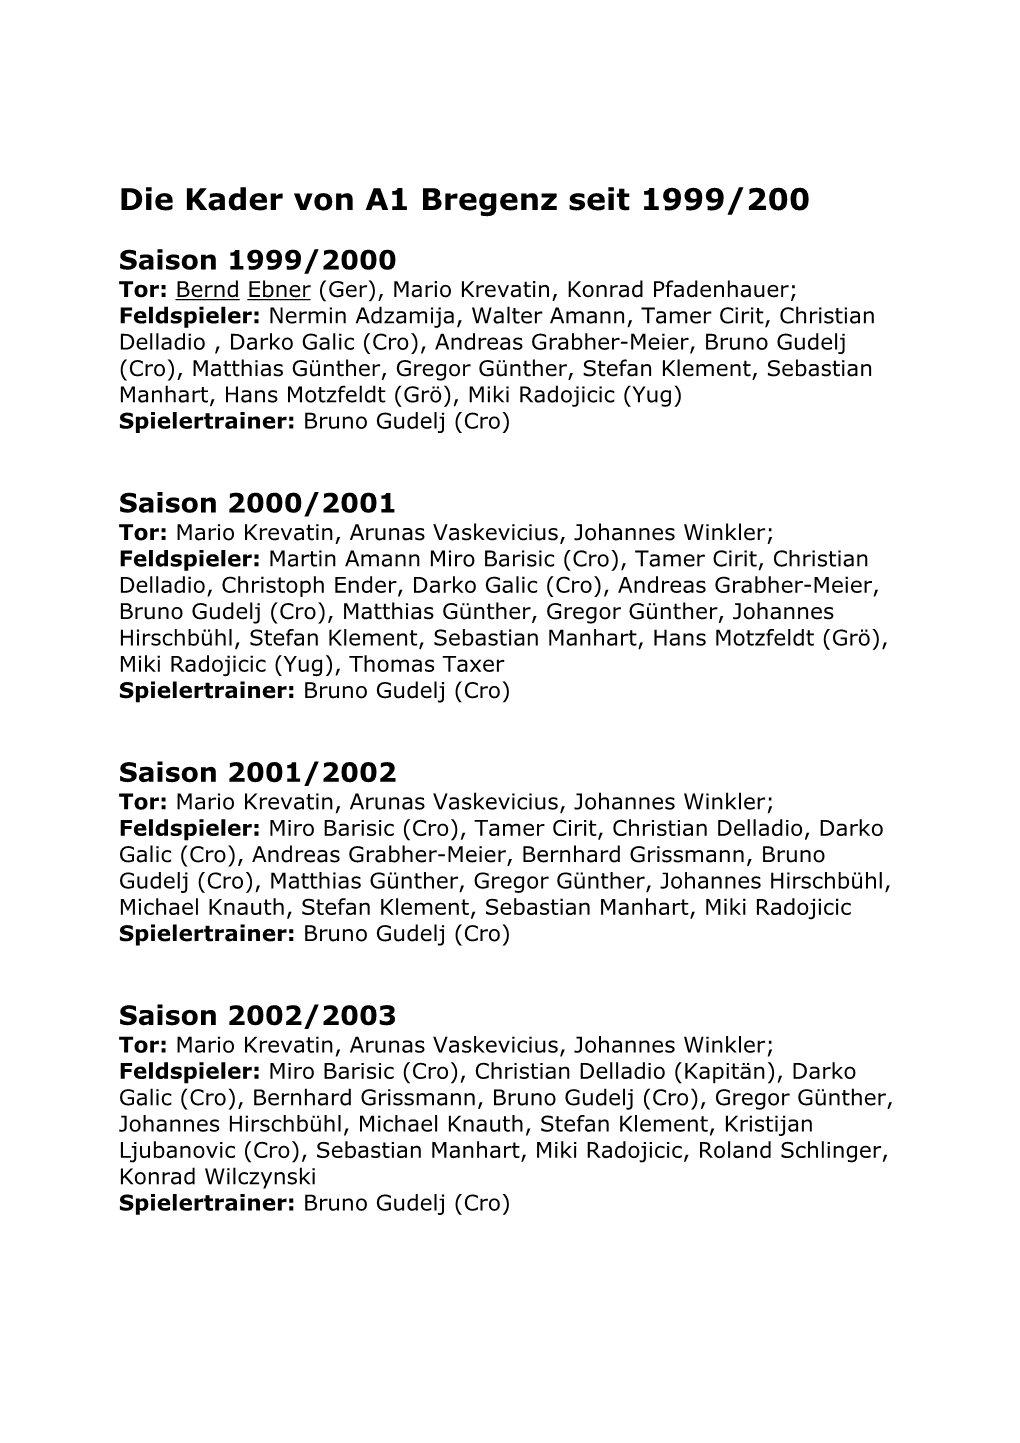 Die Kader Von A1 Bregenz Seit 1999/200